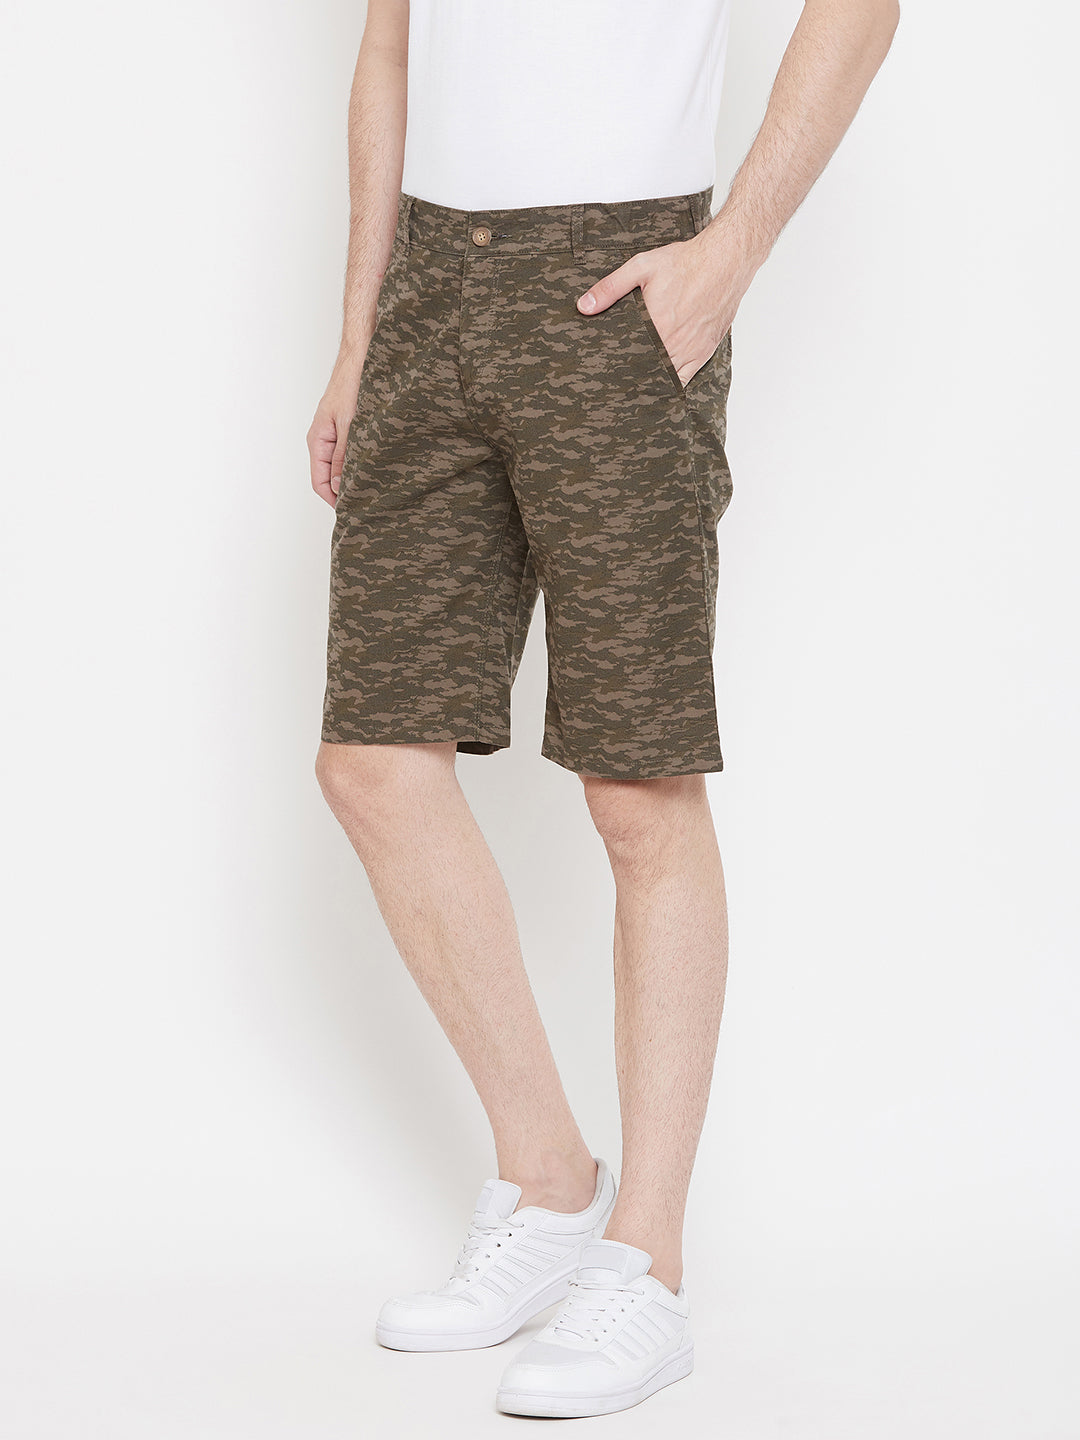 Olive Printed shorts - Men Shorts